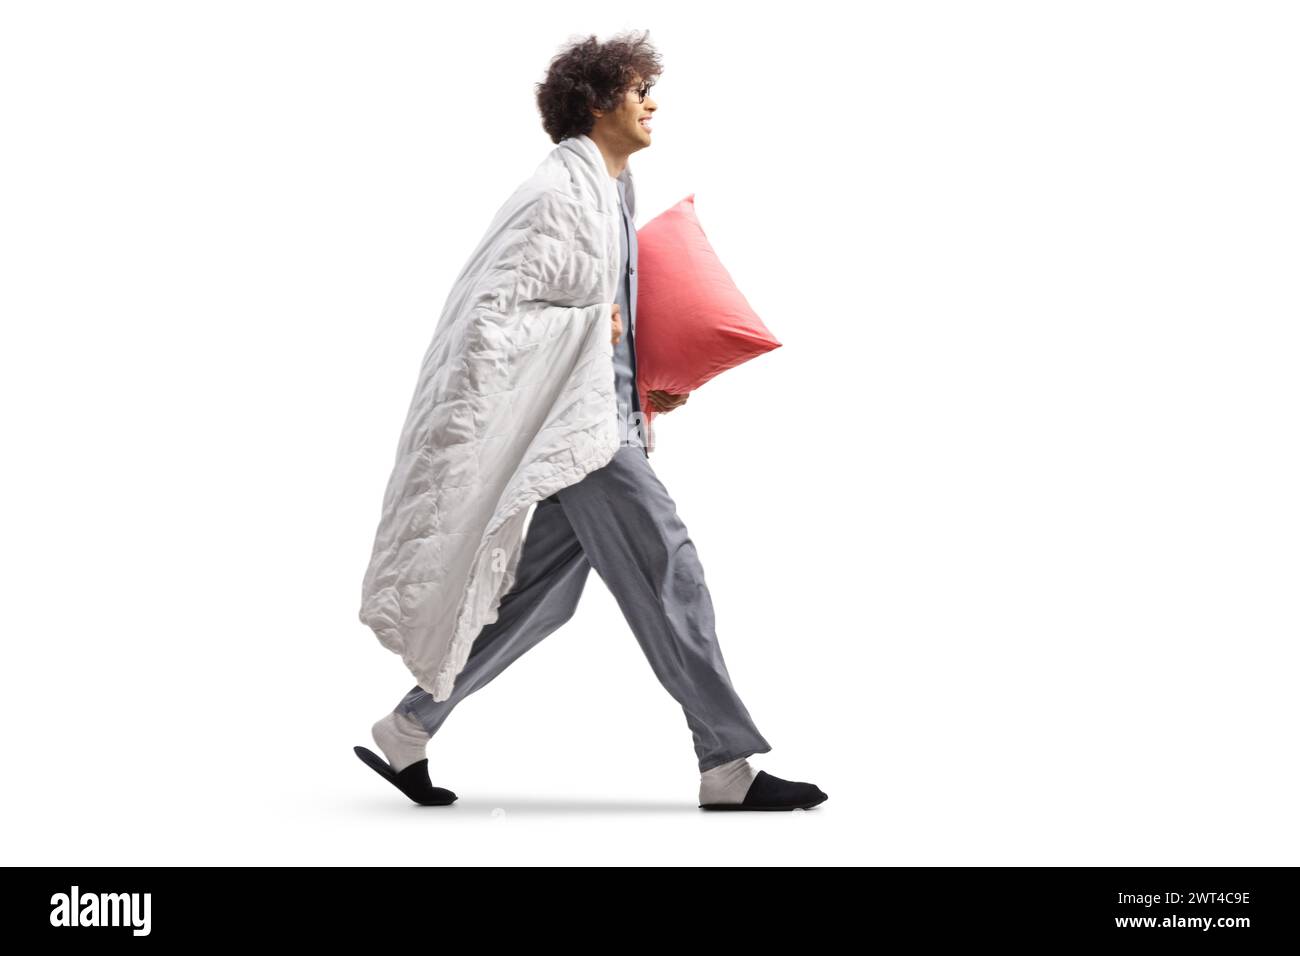 Jeune homme en pyjama enveloppé dans une couverture portant un oreiller et marchant isolé sur fond blanc Banque D'Images